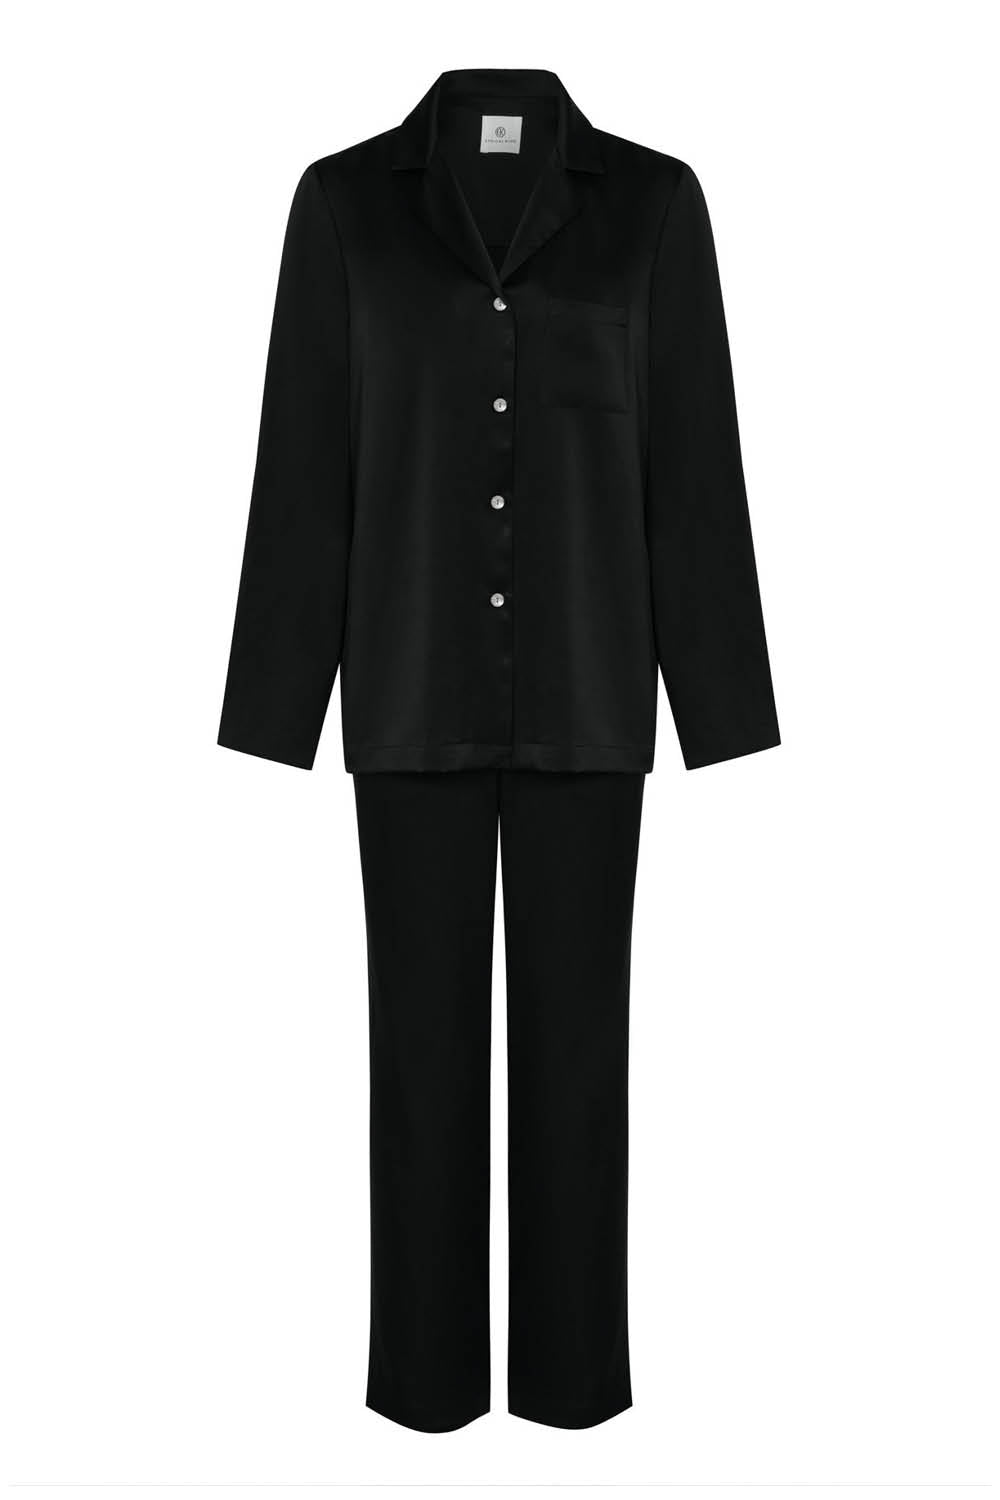 Black Silk Pajamas -  Canada